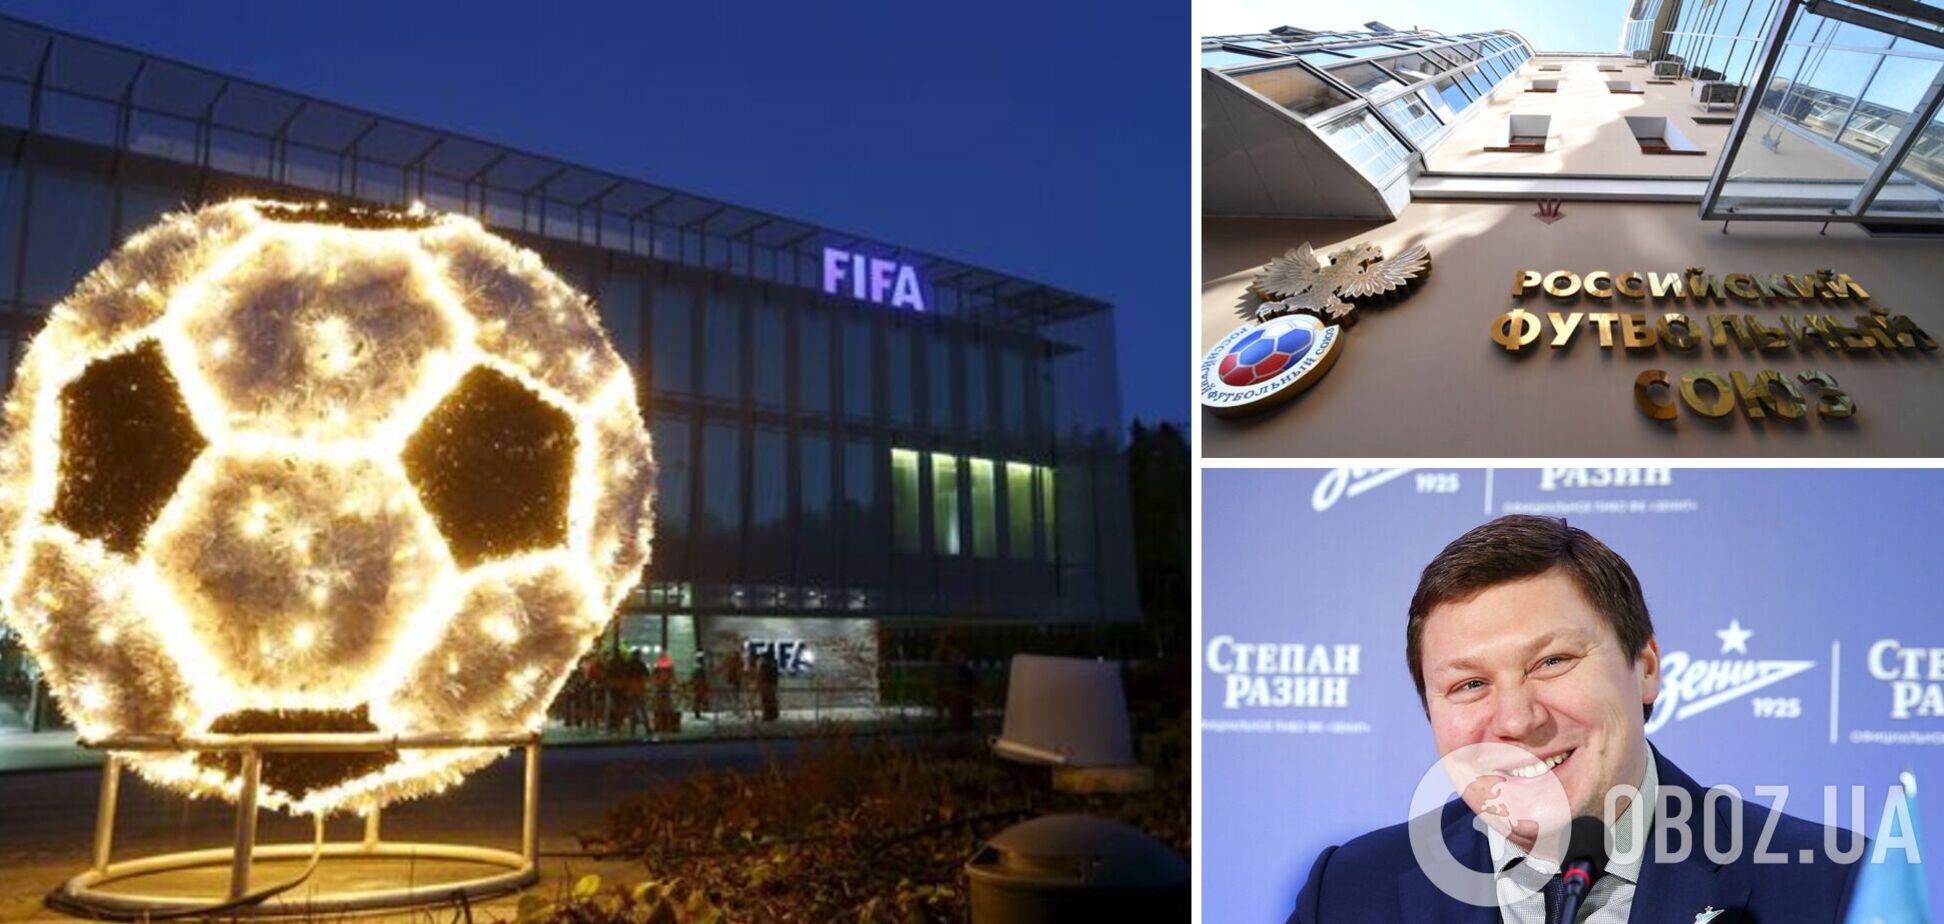 ФИФА выплатила России 2,7 млрд рублей